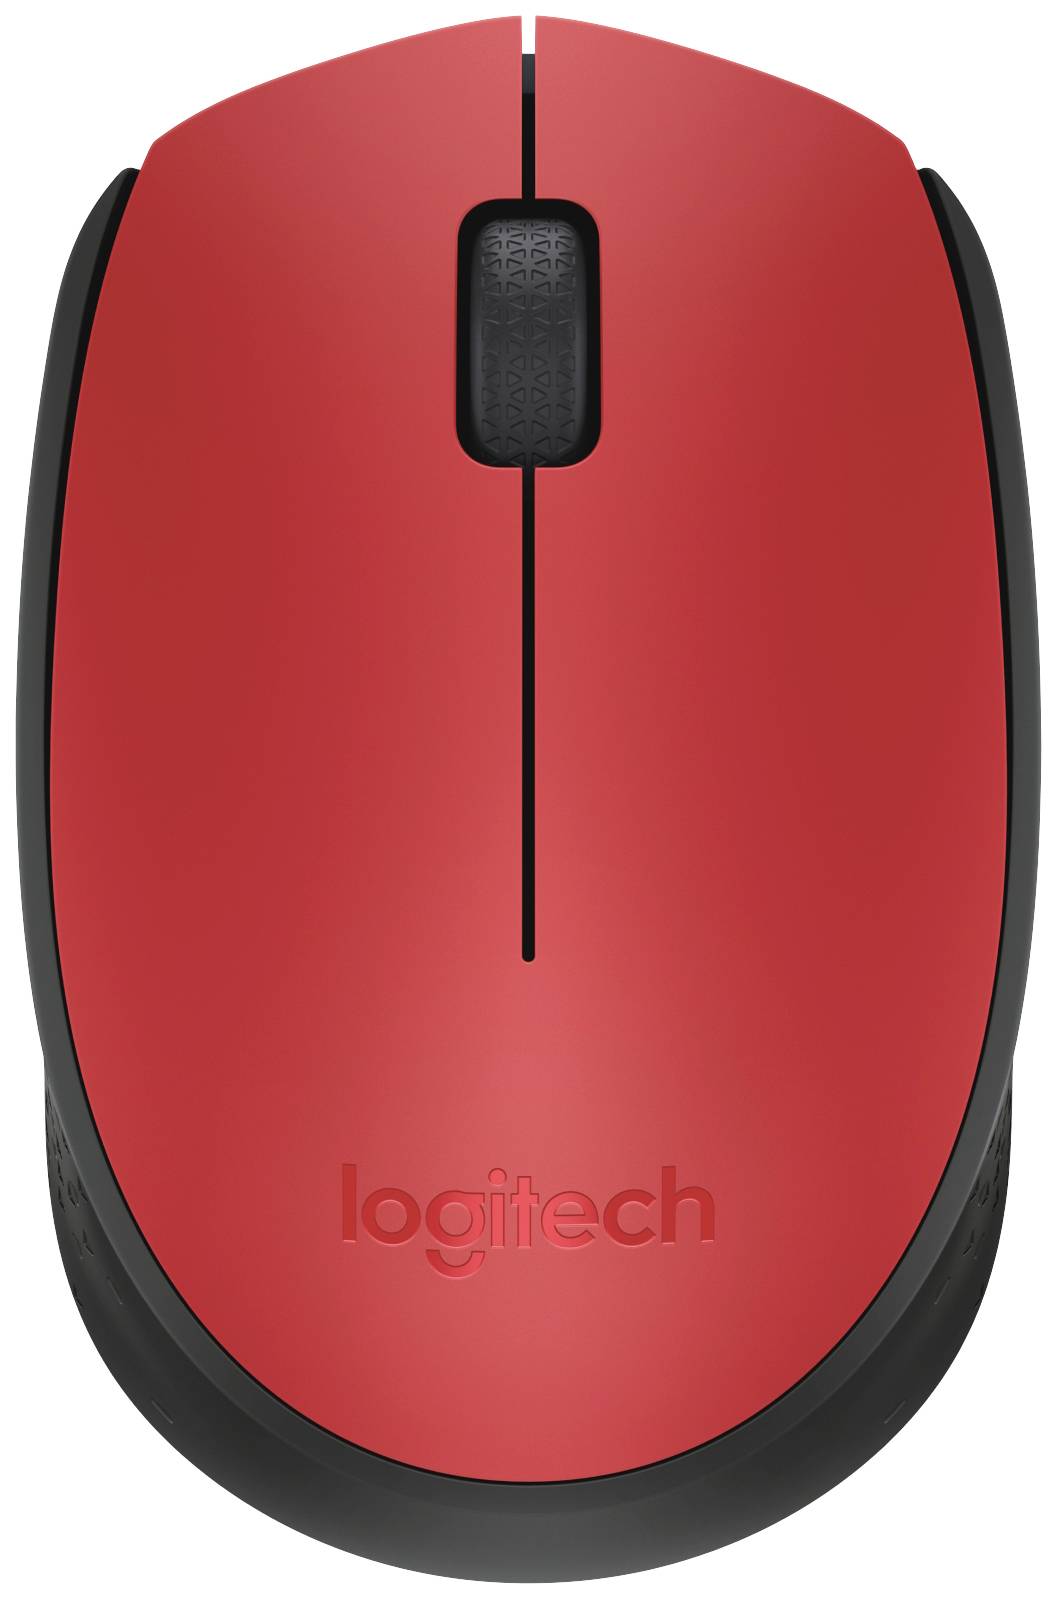 Logitech M171 Mouse Radio Red, Black 3 Buttons 1000 dpi | Conrad.com